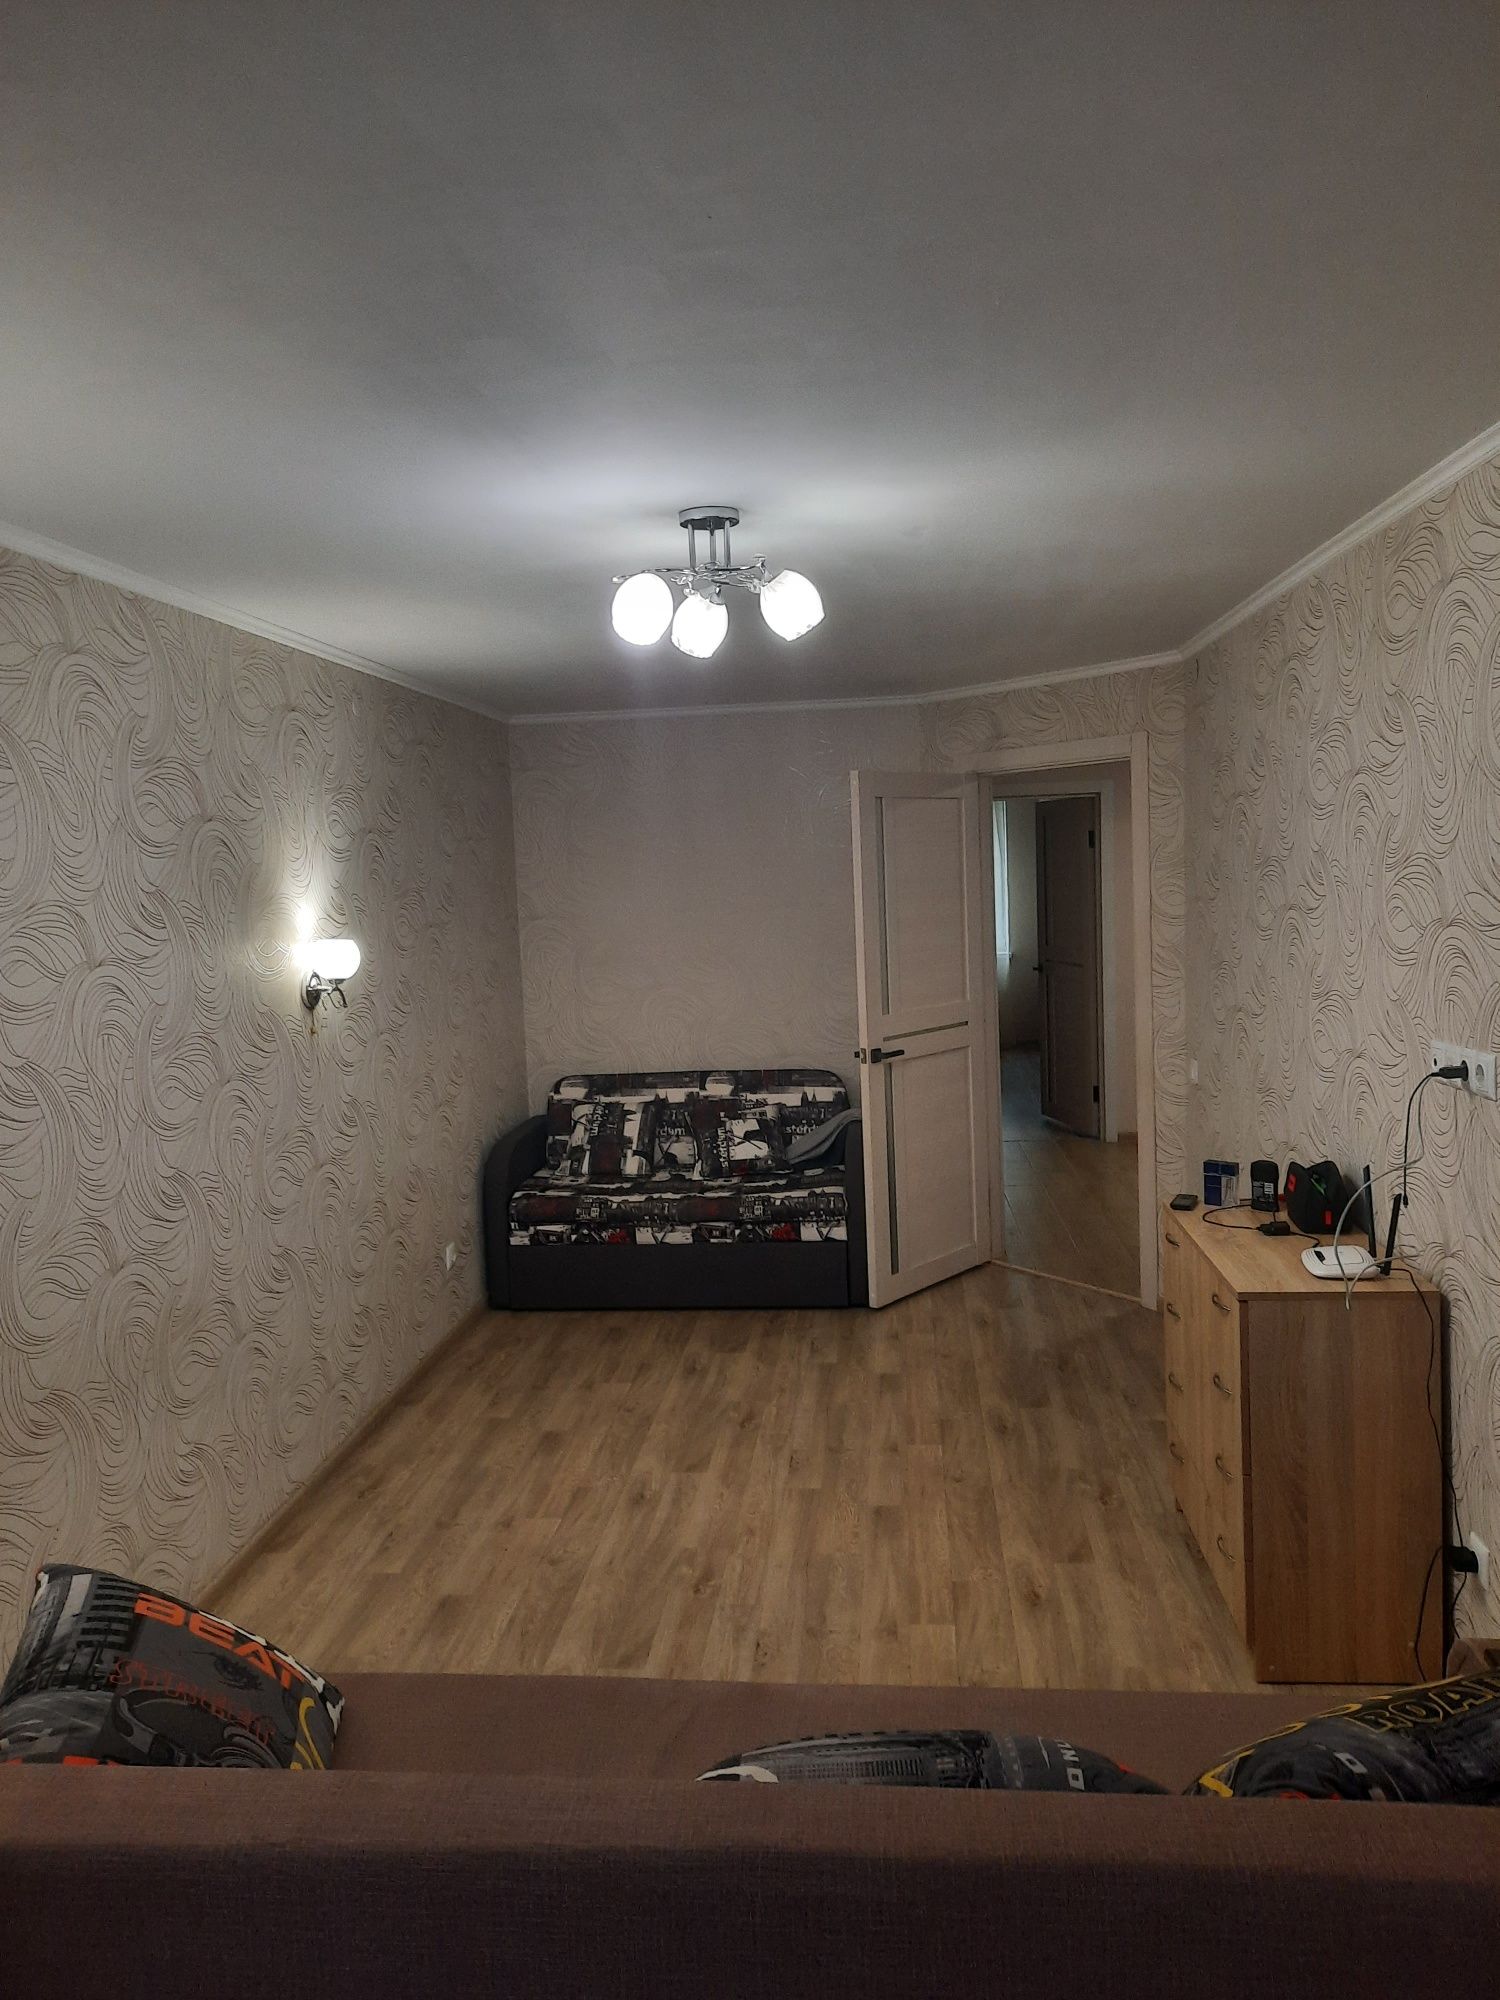 Продається 3 кімнатна квартира, Софіївська Борщагівка, ЖК "Щасливий"